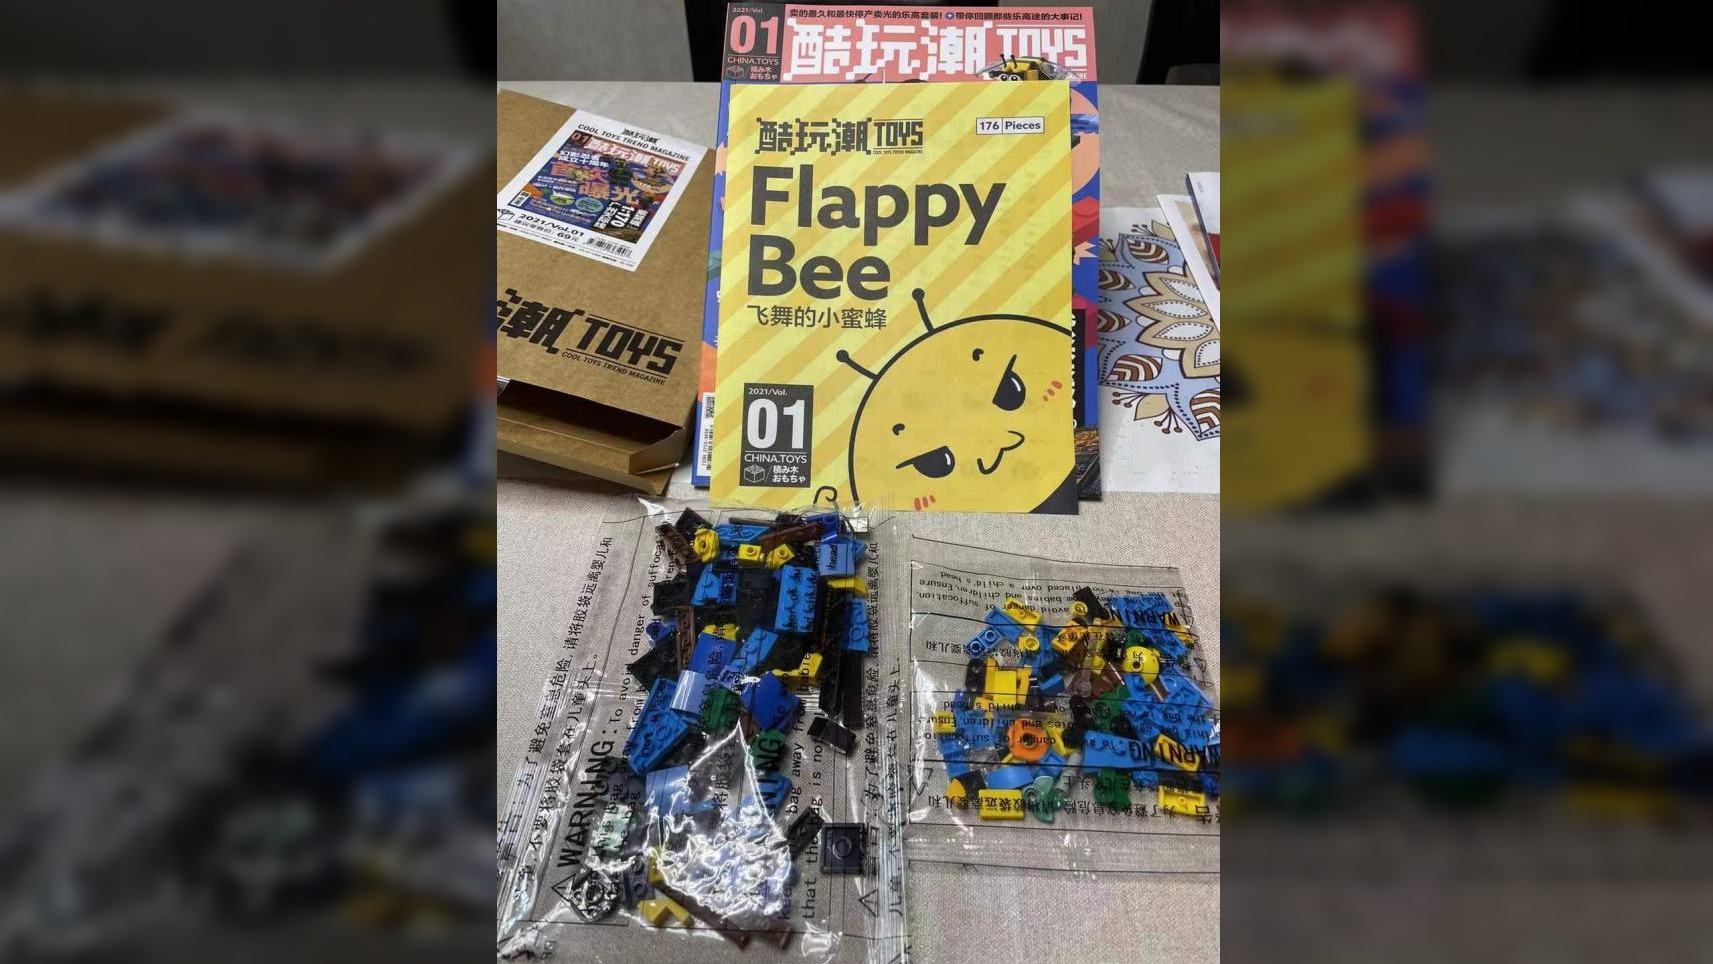 Gratisbeilage des "Flappy Bee" mit Gobricks-Teilen - Anleitung via JK Brickworks.